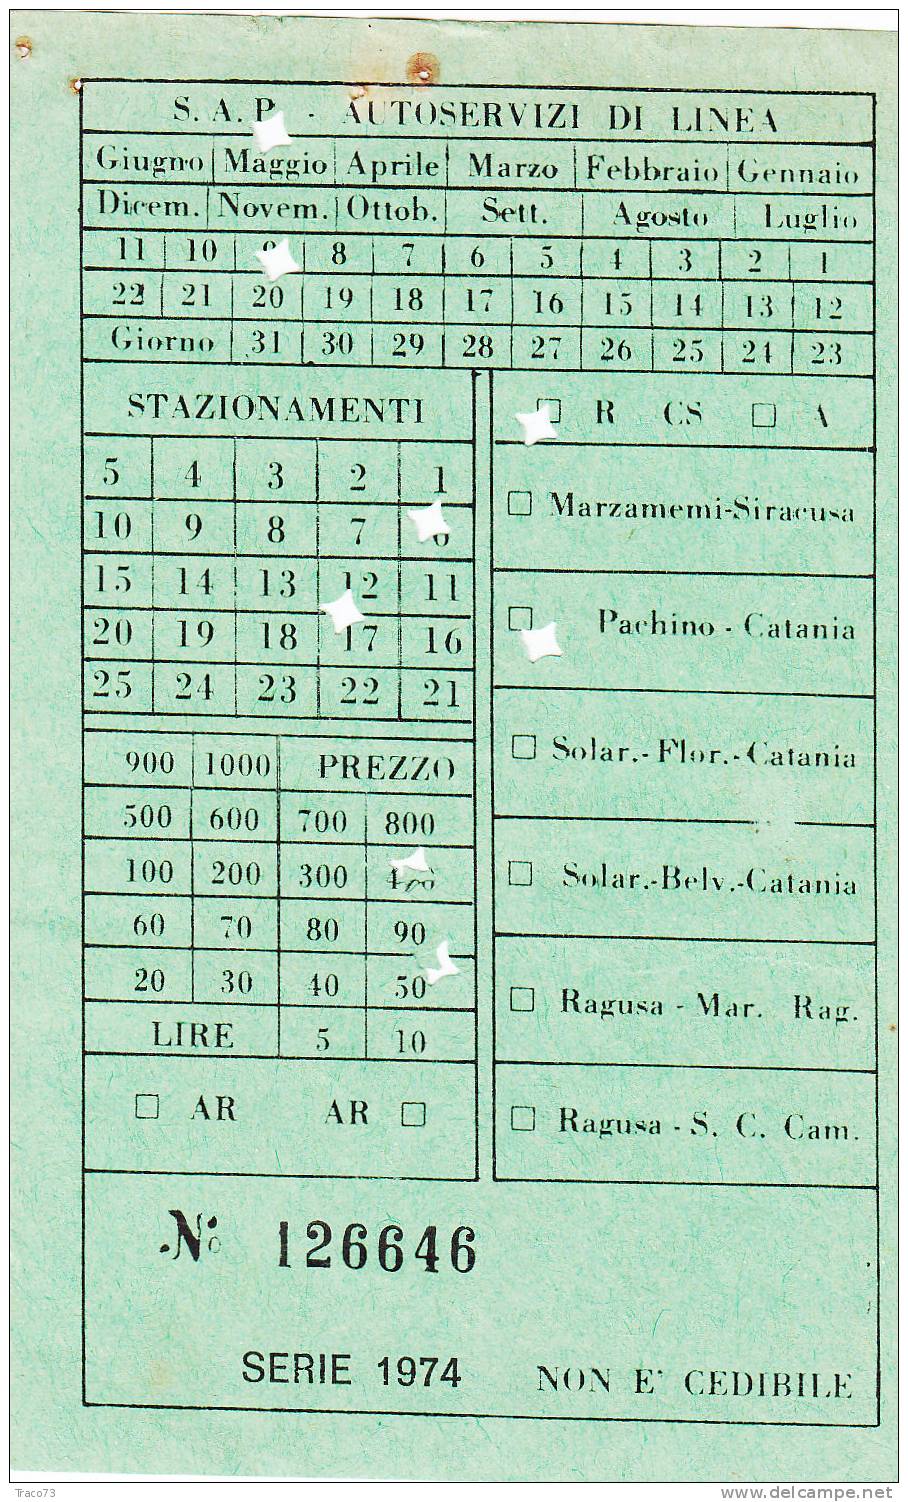 Pachino / Catania  -  Società S.A.P.  - Autoservizi Di Linea  - Biglietto Abbonamento - Anno 1974 - Europa